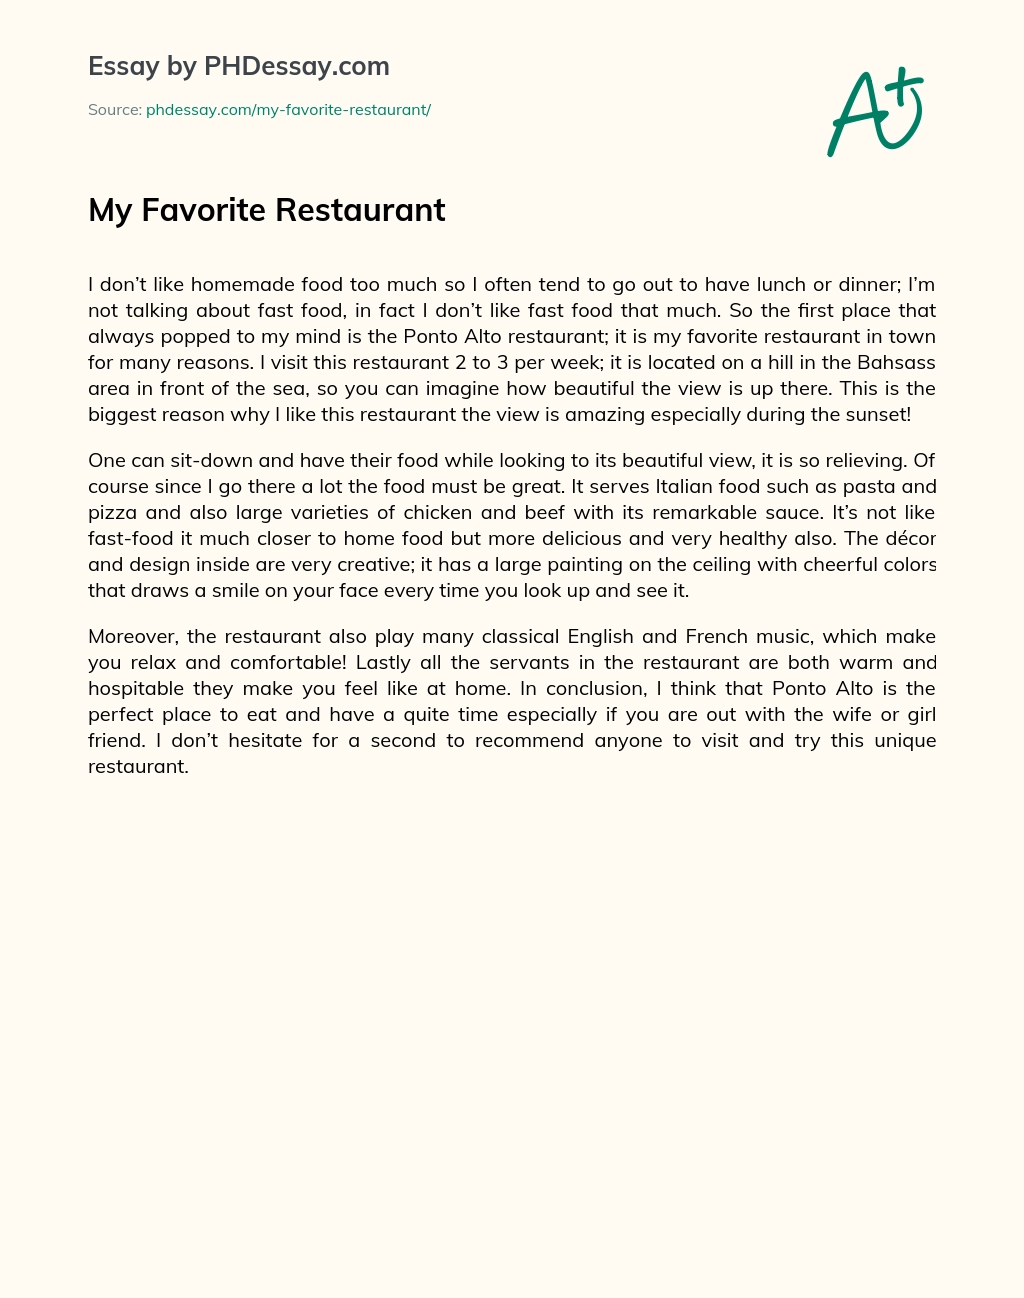 My Favorite Restaurant essay